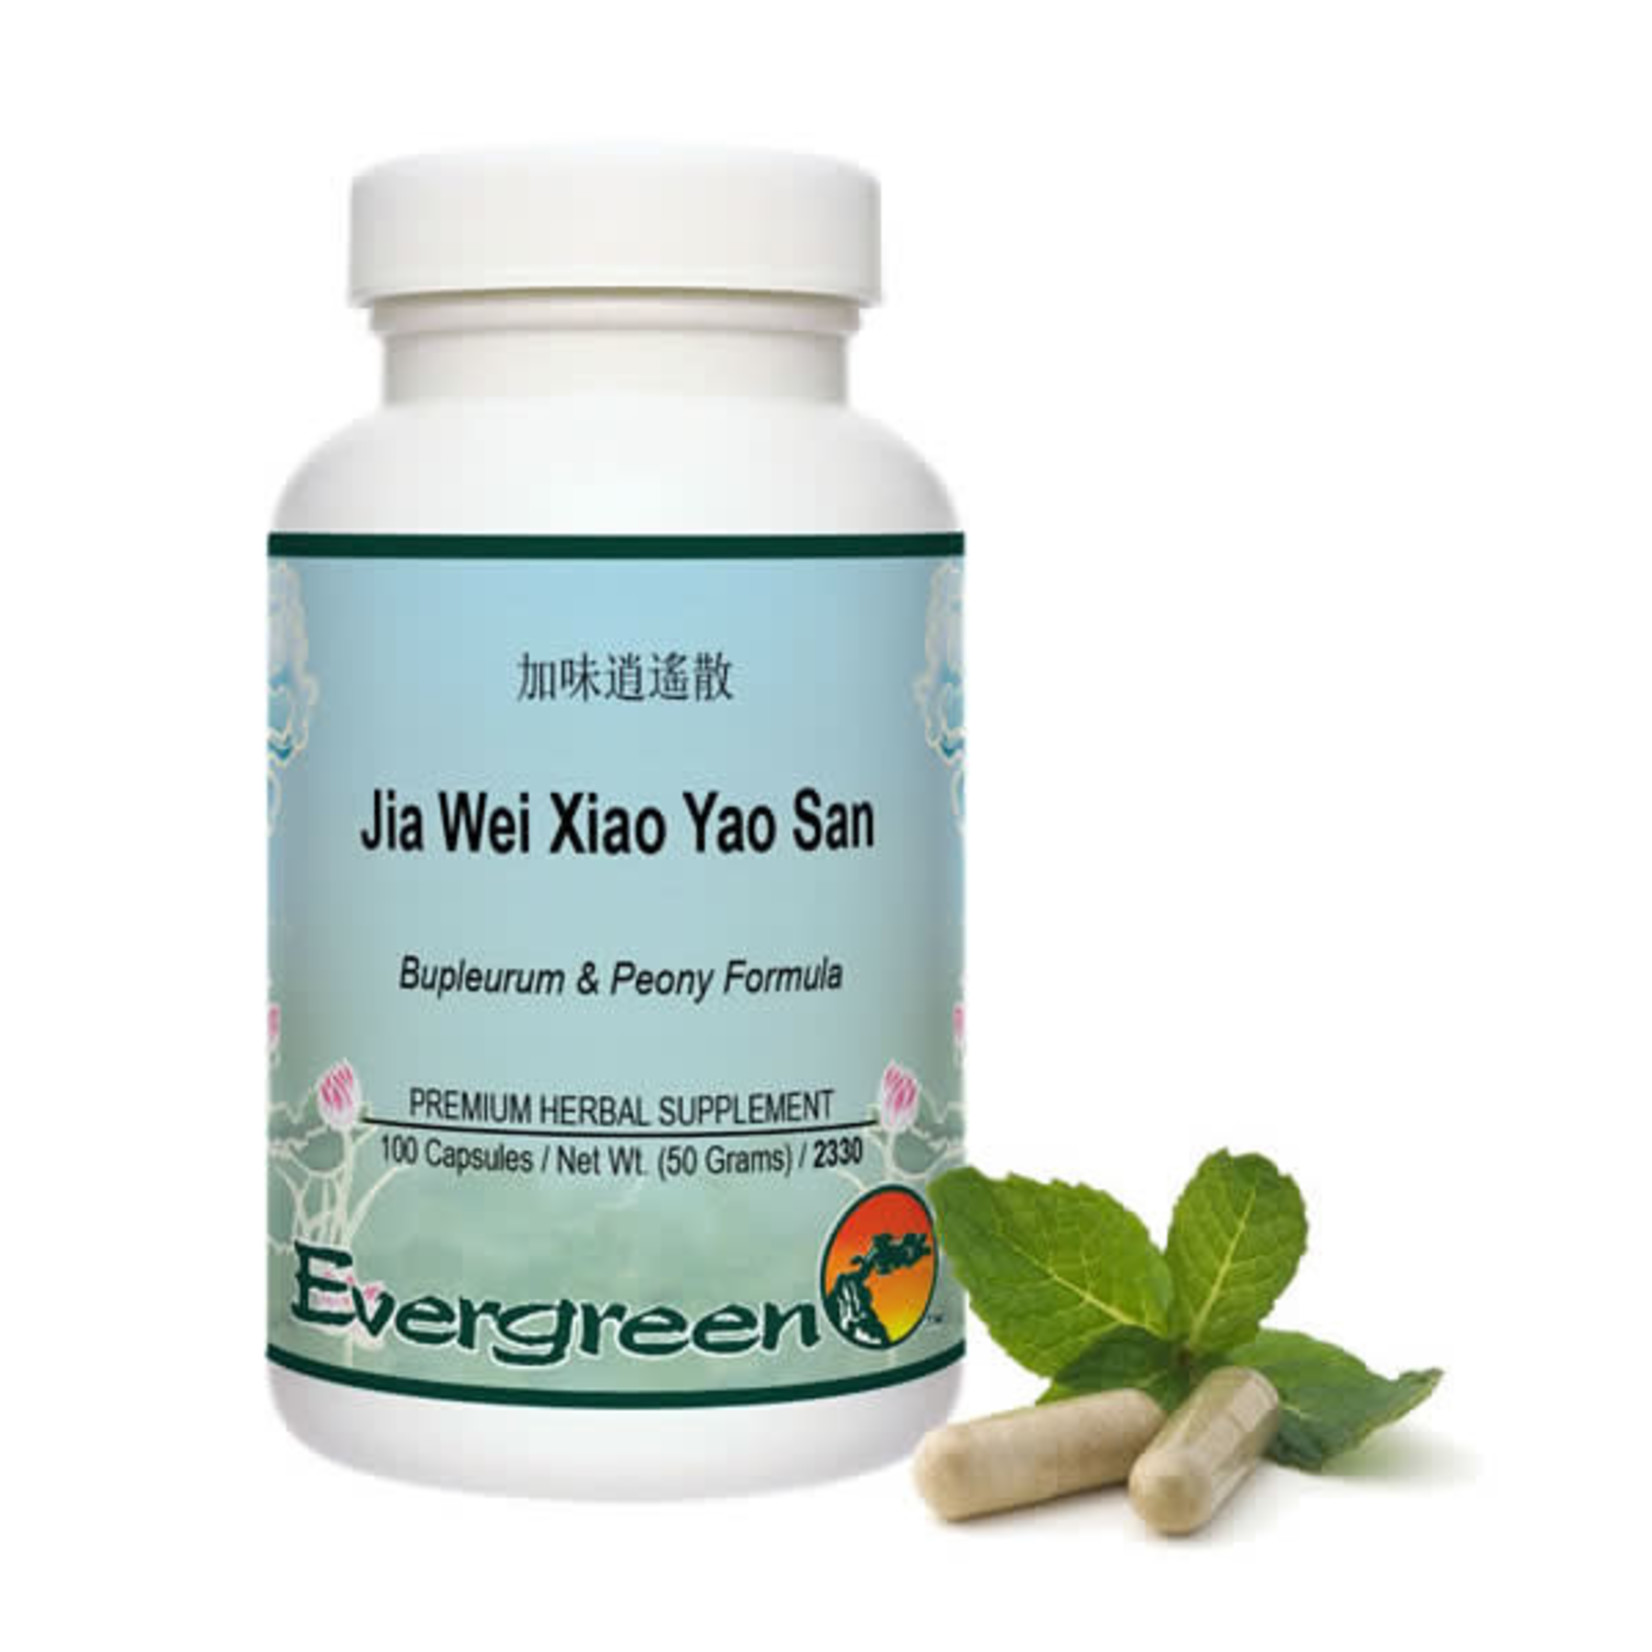 Jia Wei Xiao Yao San (Evergreen Herbs)